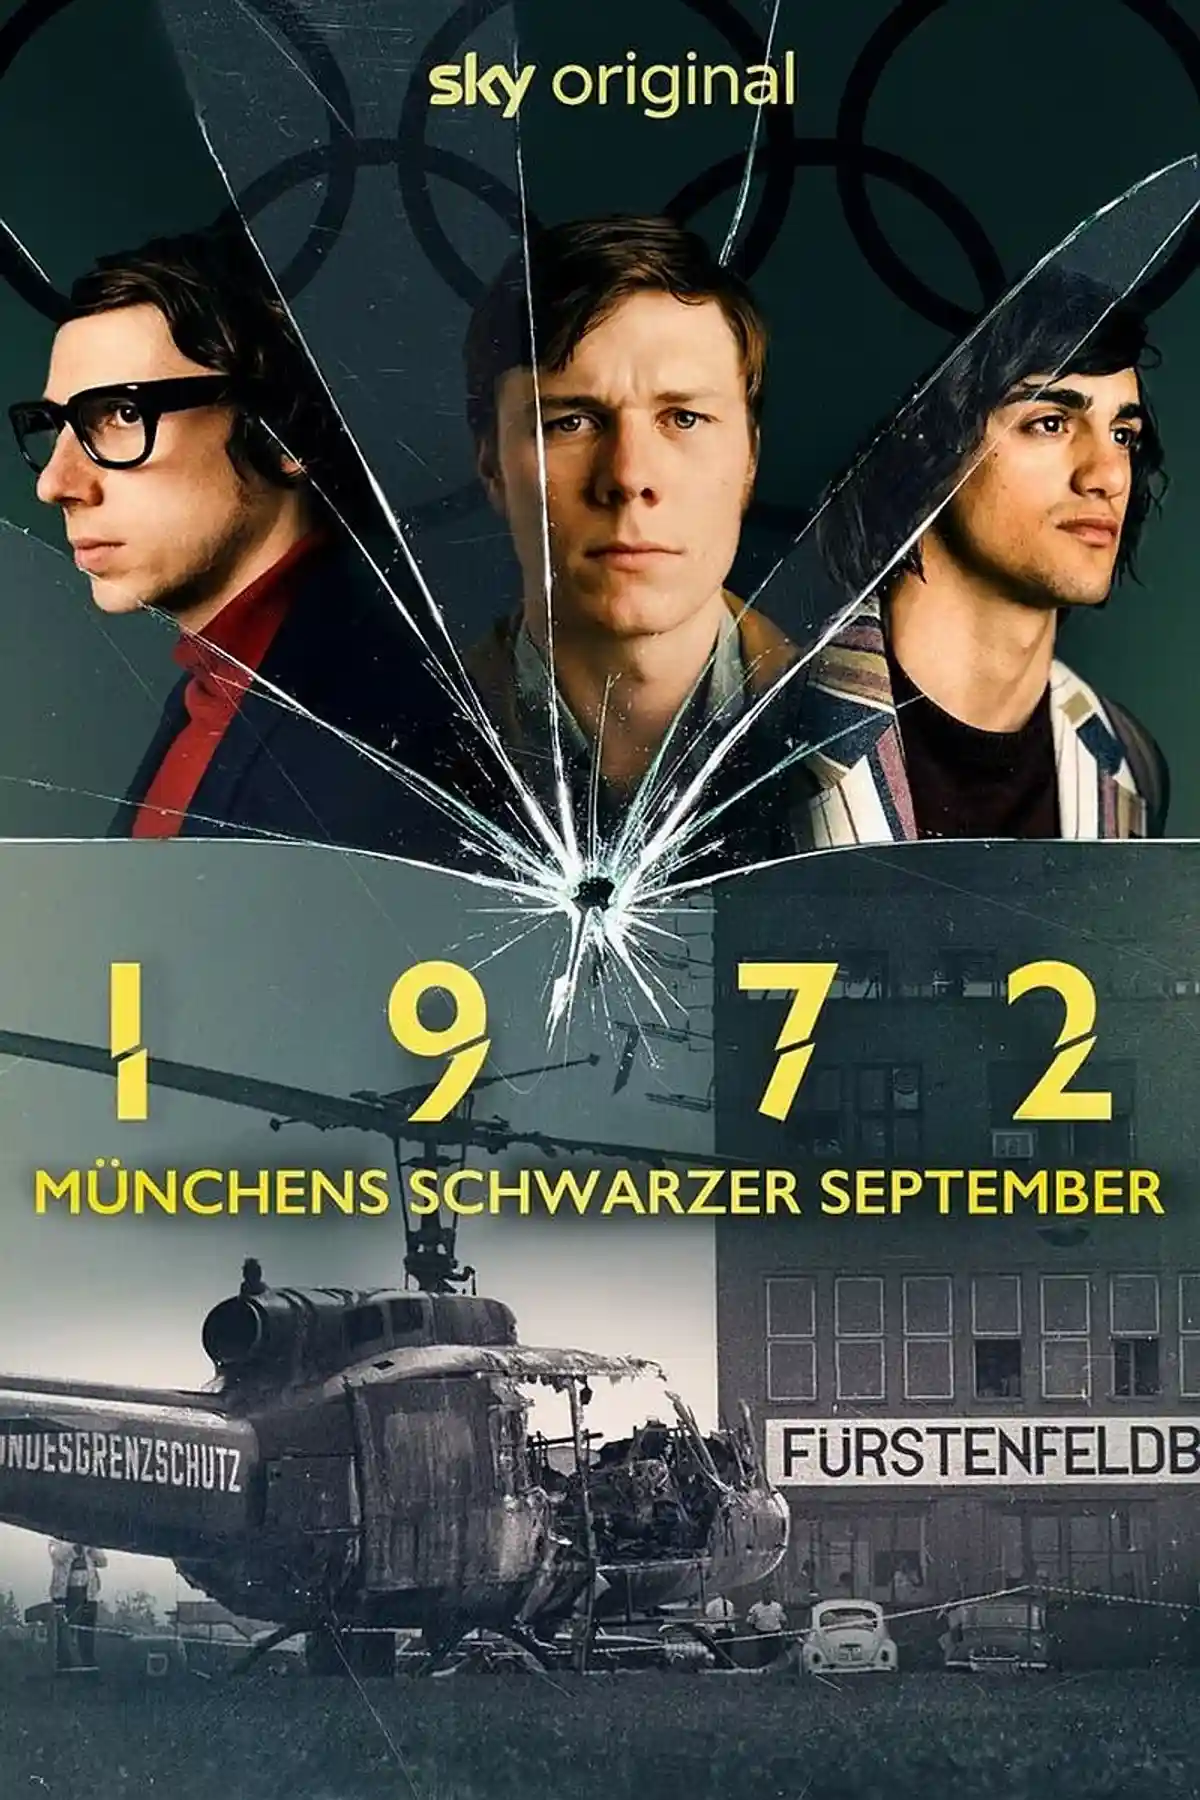 Впервые Гвидо Шлоссер появляется перед камерой в фильме «1972 — Мюнхенский черный сентябрь». No attribution / stadt-bremerhaven.de